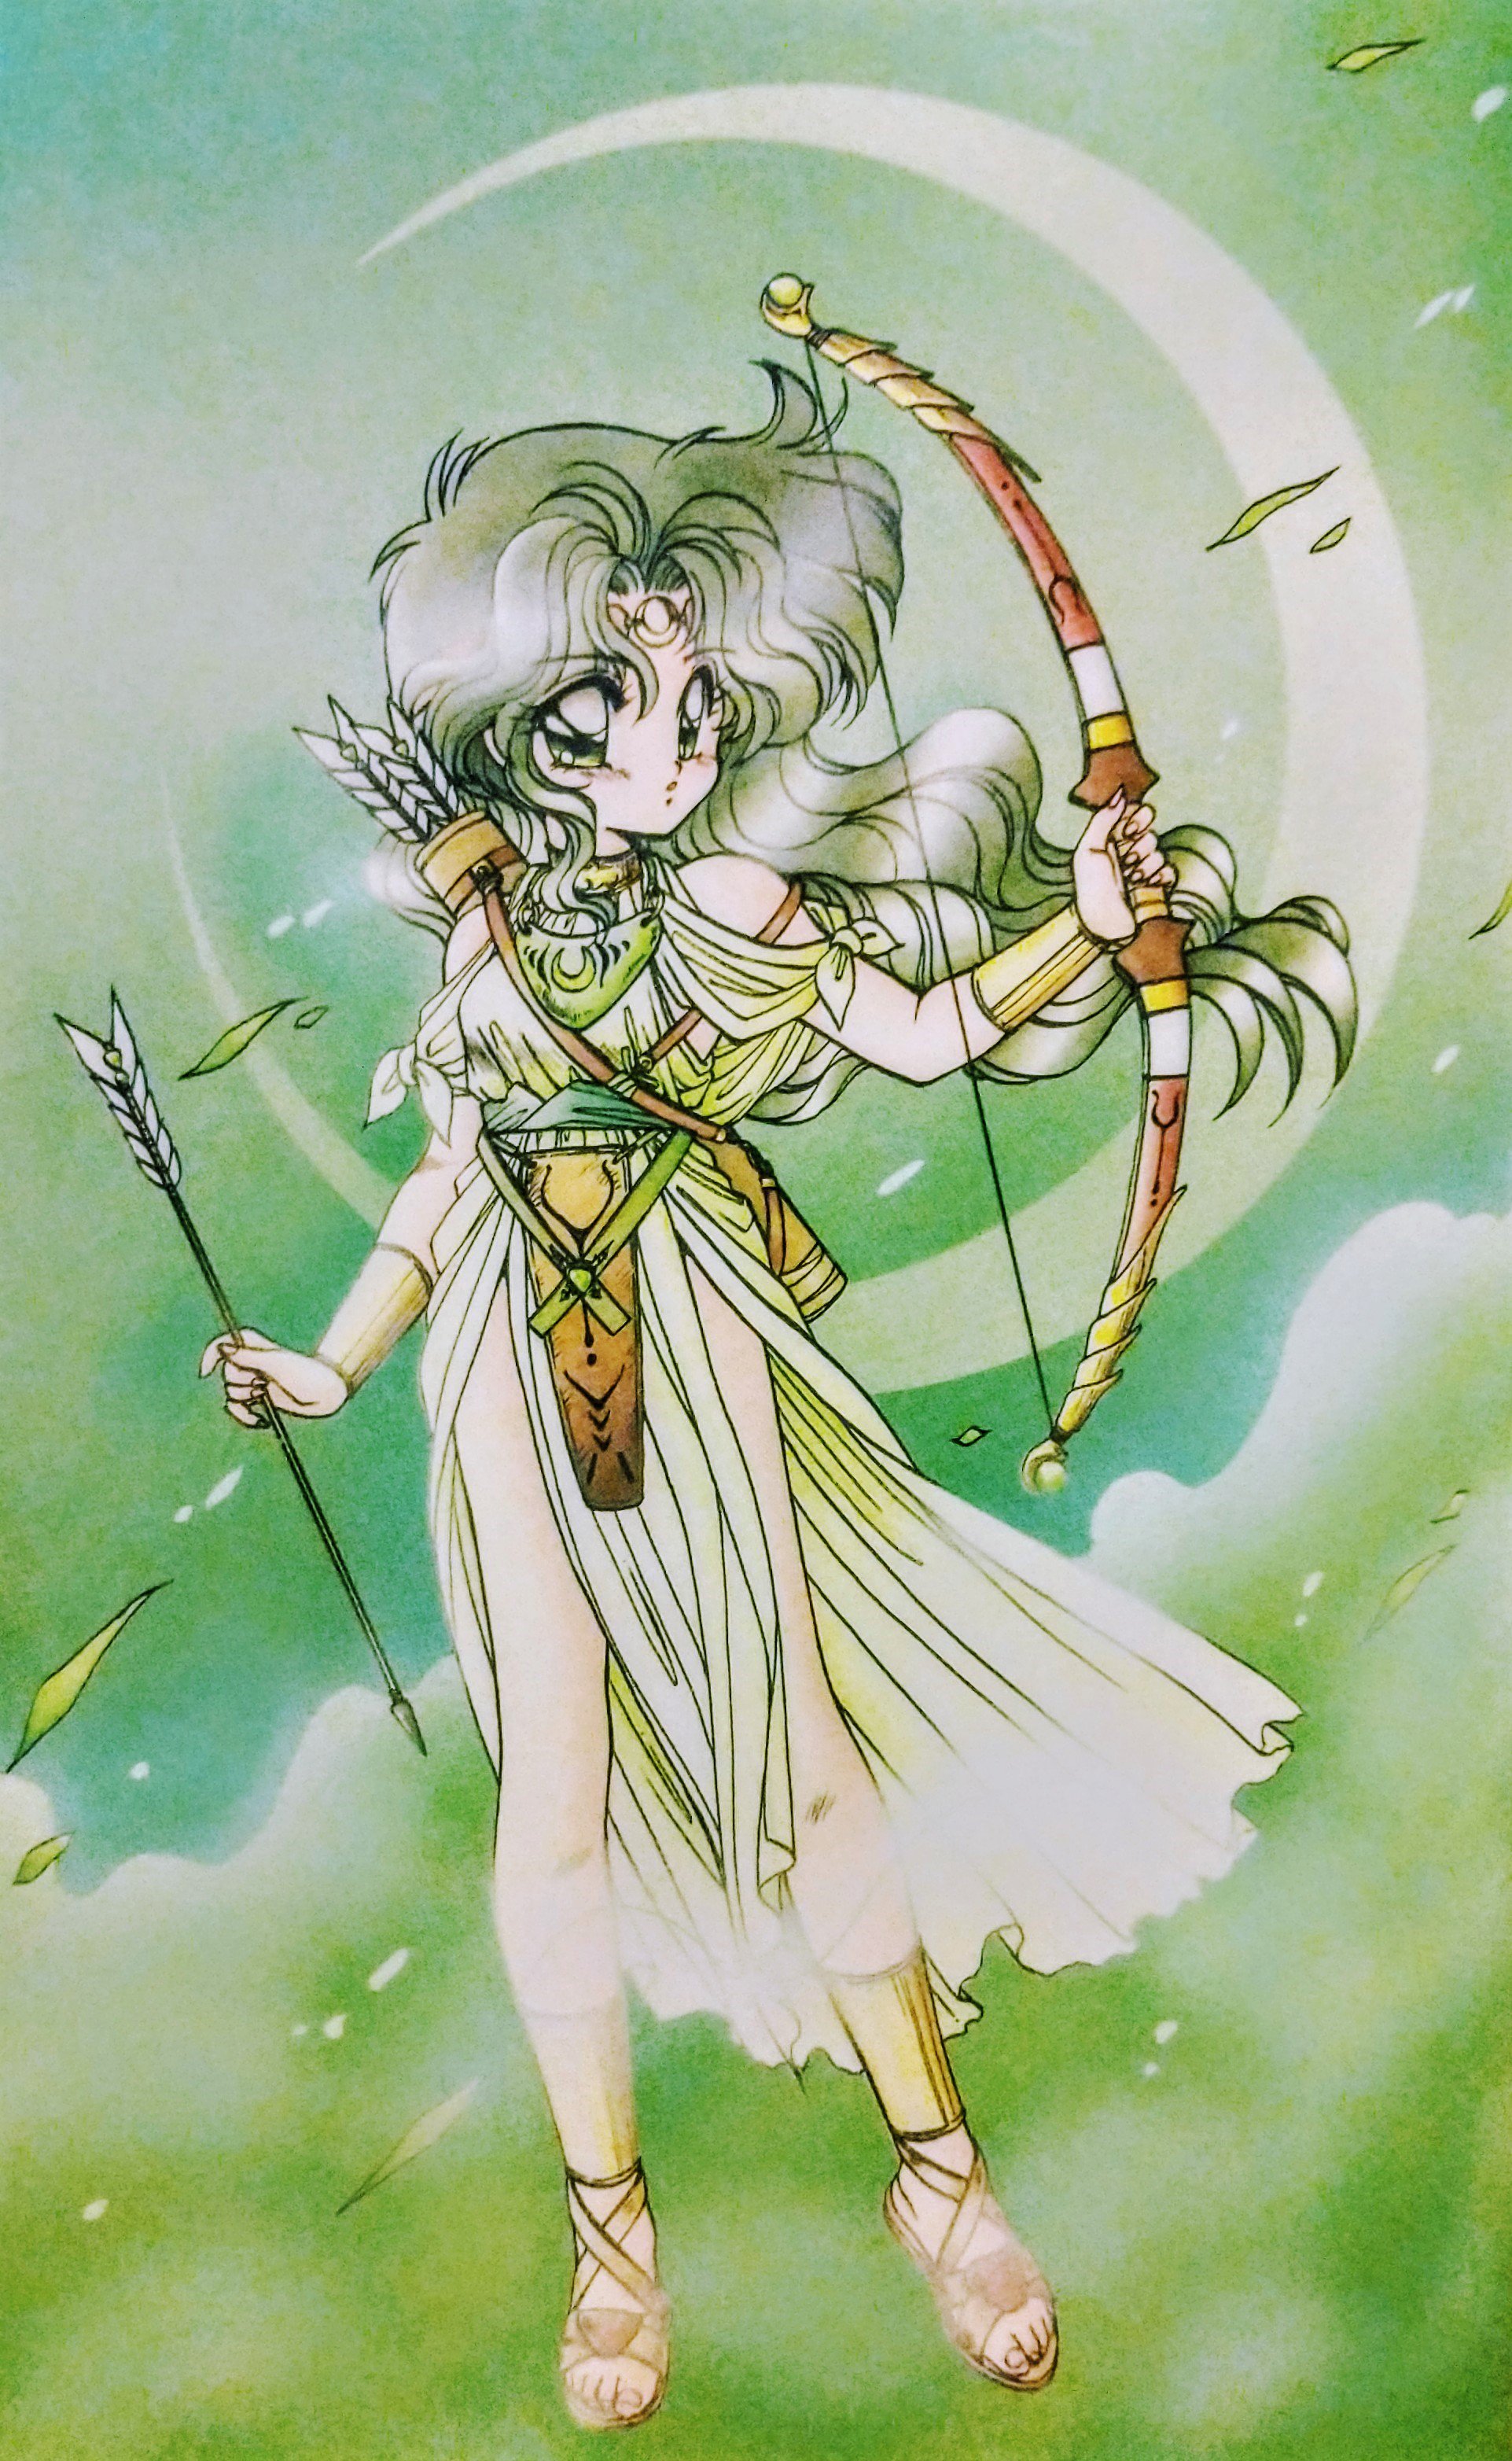 セオドア T H E O Some Pics From A 1992 蘭宮涼 Ryōramiya Art Book I Recently Received In The Mail Art Design Characterart Characterdesign Manga T Co 8kxq5mnlbk Twitter